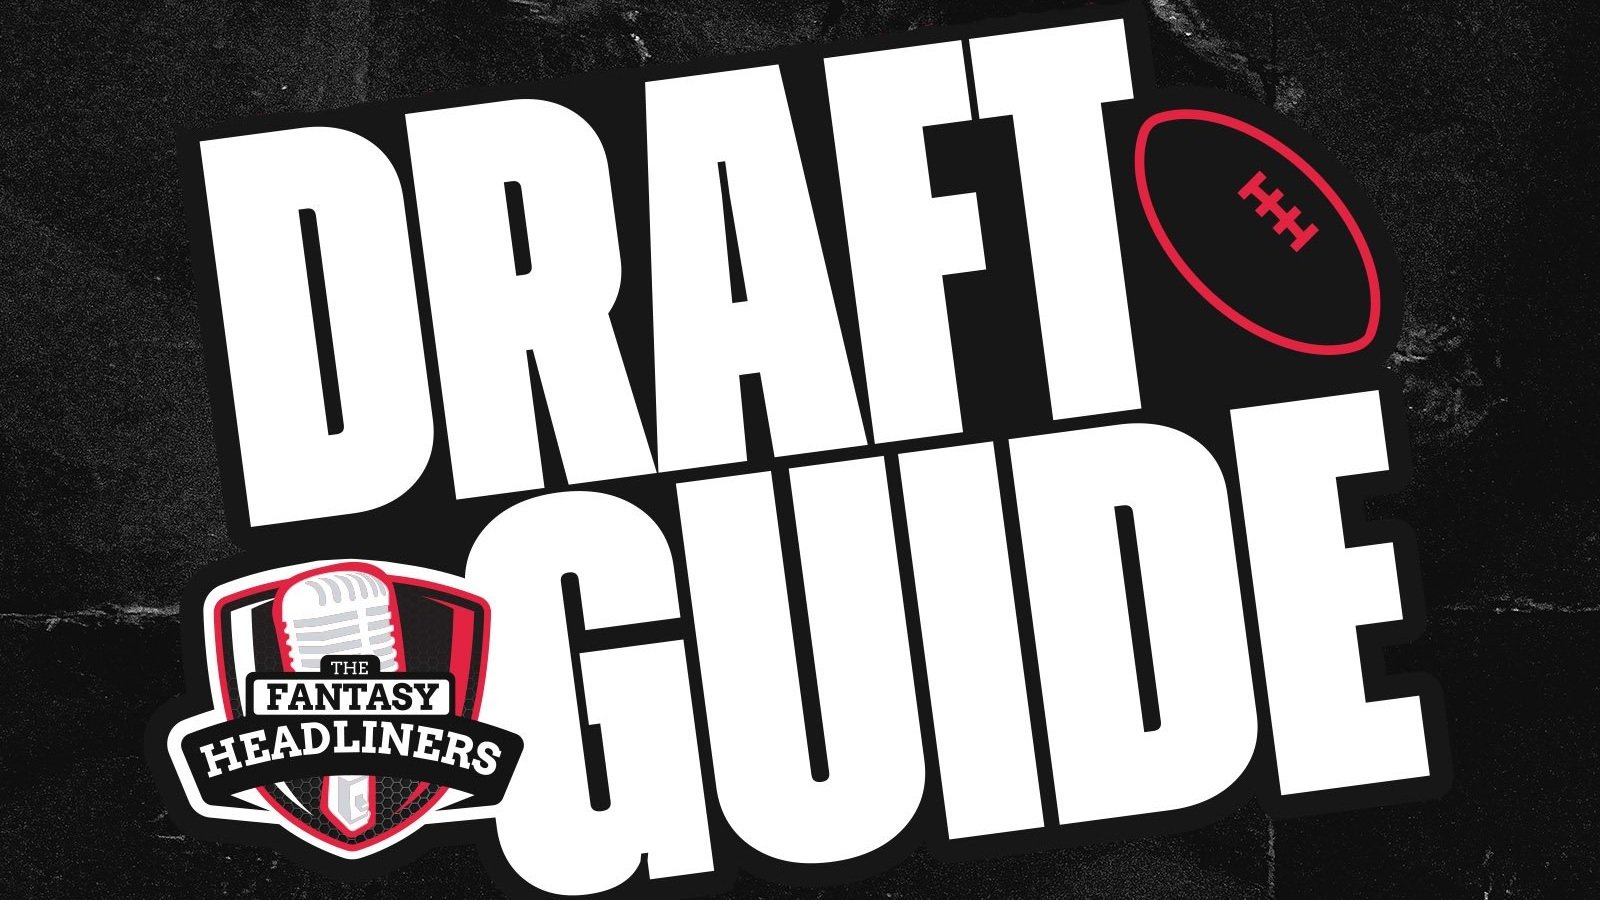 fantasy football 2022 draft guide